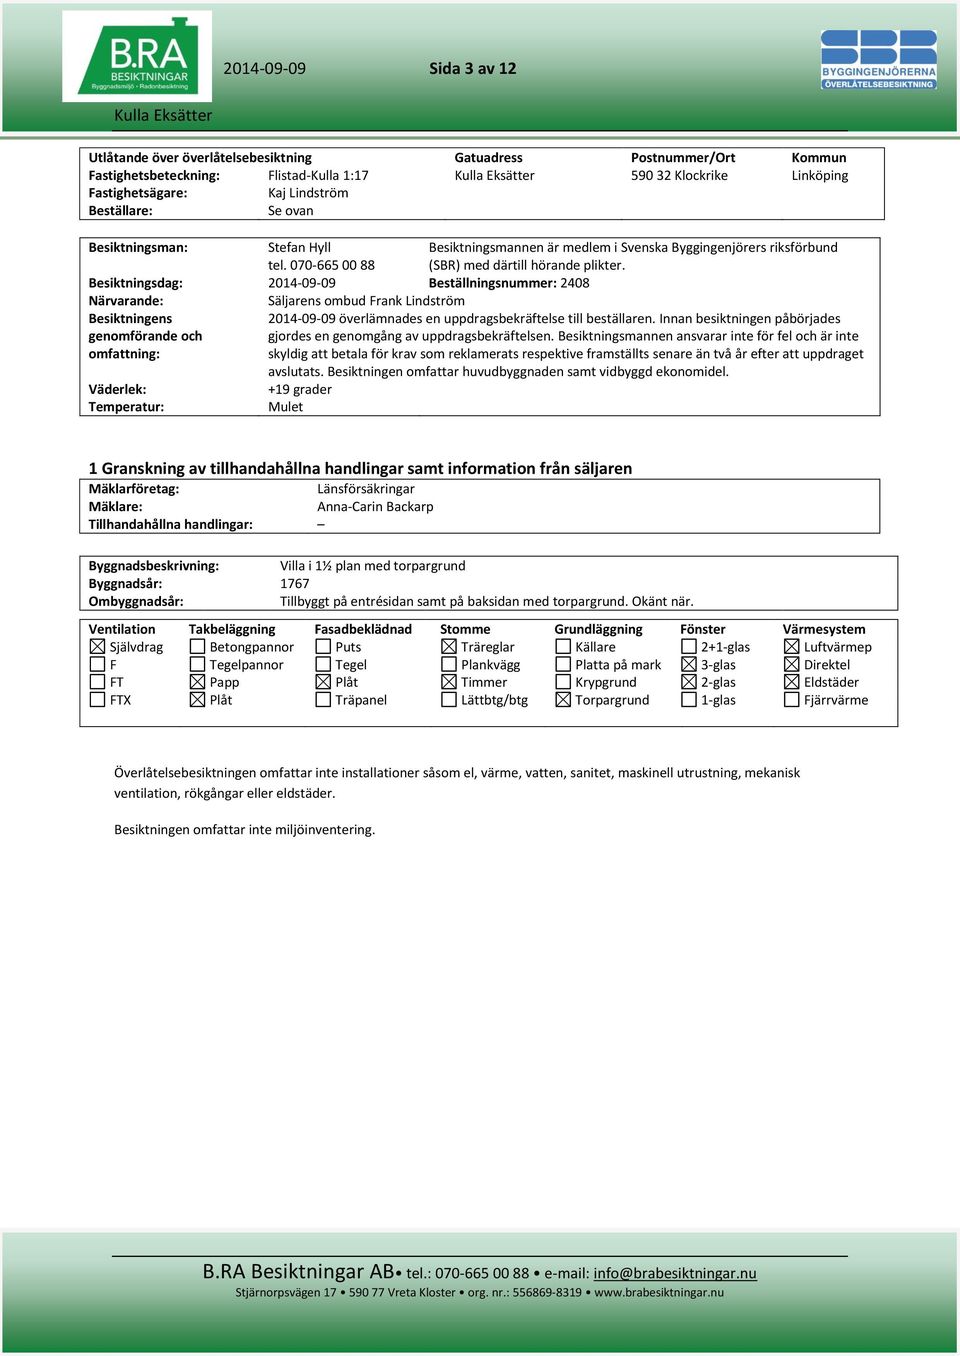 Besiktningsdag: 2014-09-09 Beställningsnummer: 2408 Närvarande: Säljarens ombud Frank Lindström Besiktningens genomförande och omfattning: 2014-09-09 överlämnades en uppdragsbekräftelse till